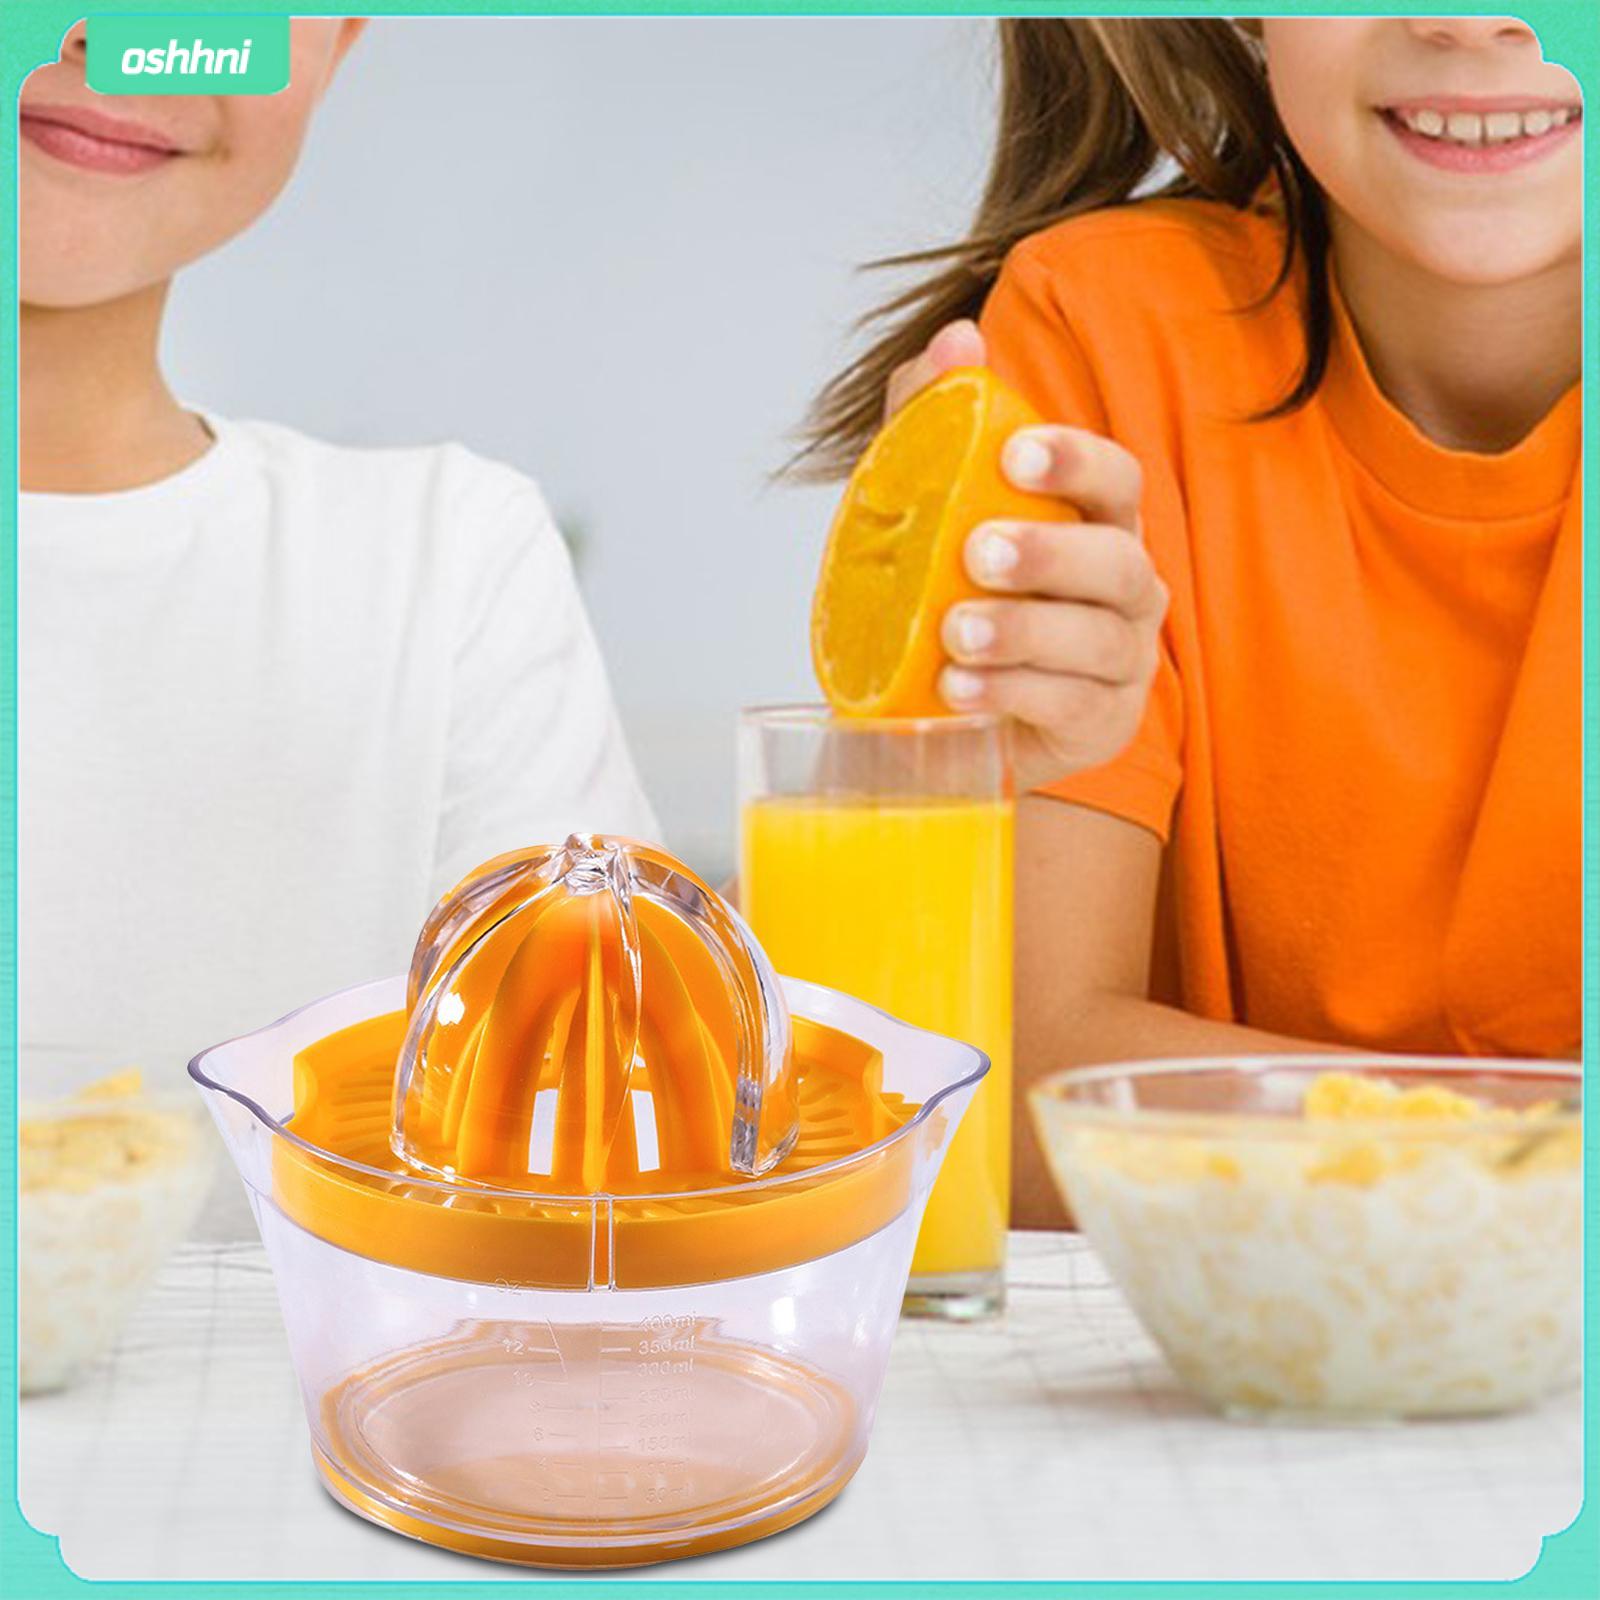 oshhni Manual Hand lemon Orange Juicer Transparent Body for Kitchen Juicing